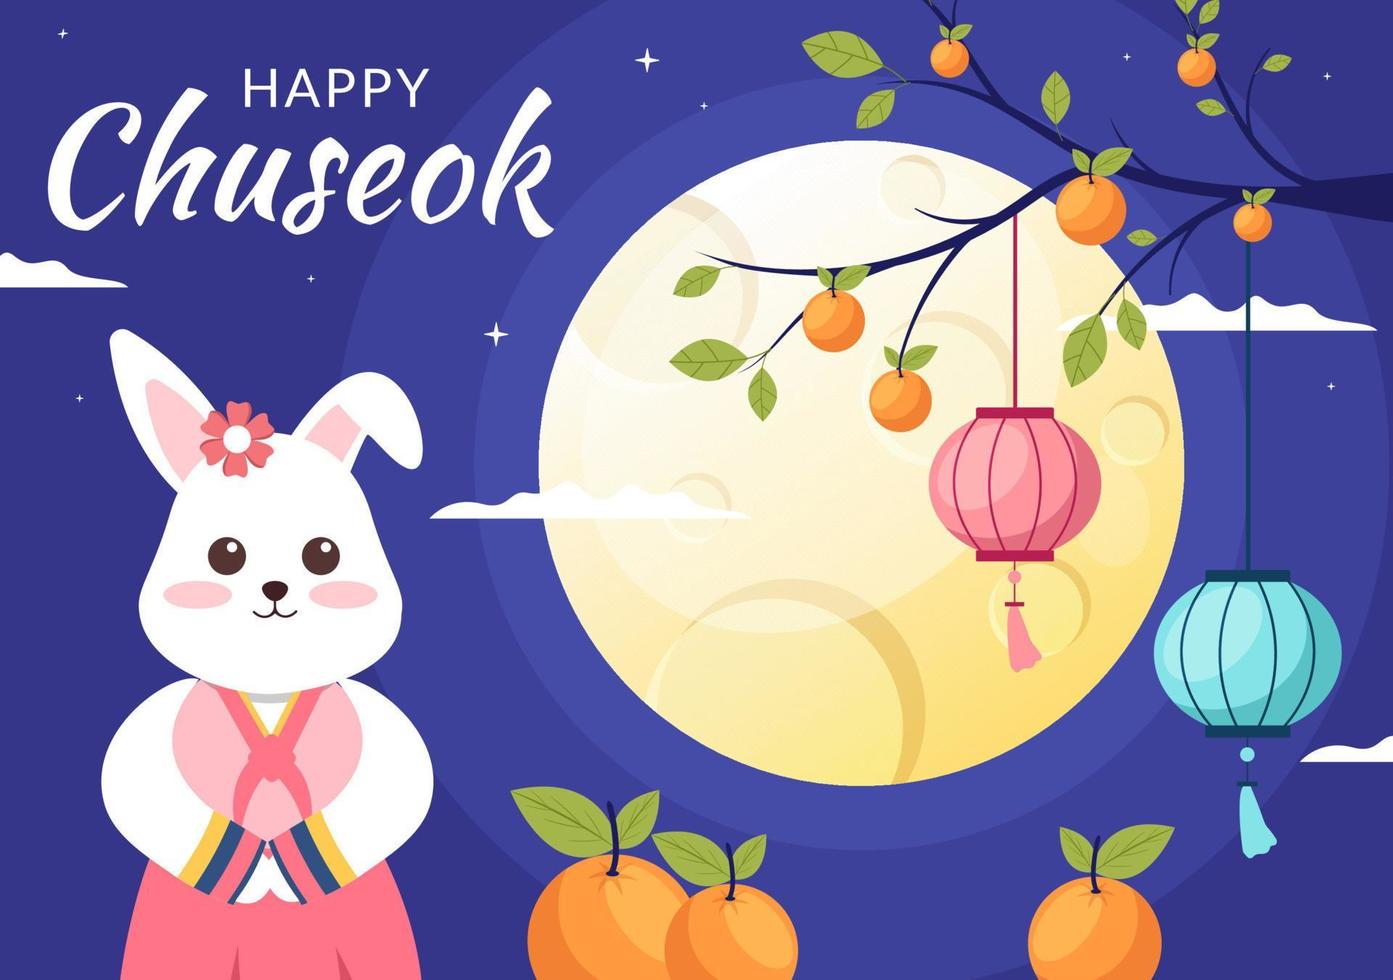 gelukkige chuseok-dag in Korea voor Thanksgiving met schattig konijnkarakter in traditioneel hanbok, volle maan en luchtlandschap in platte cartoonillustratie vector